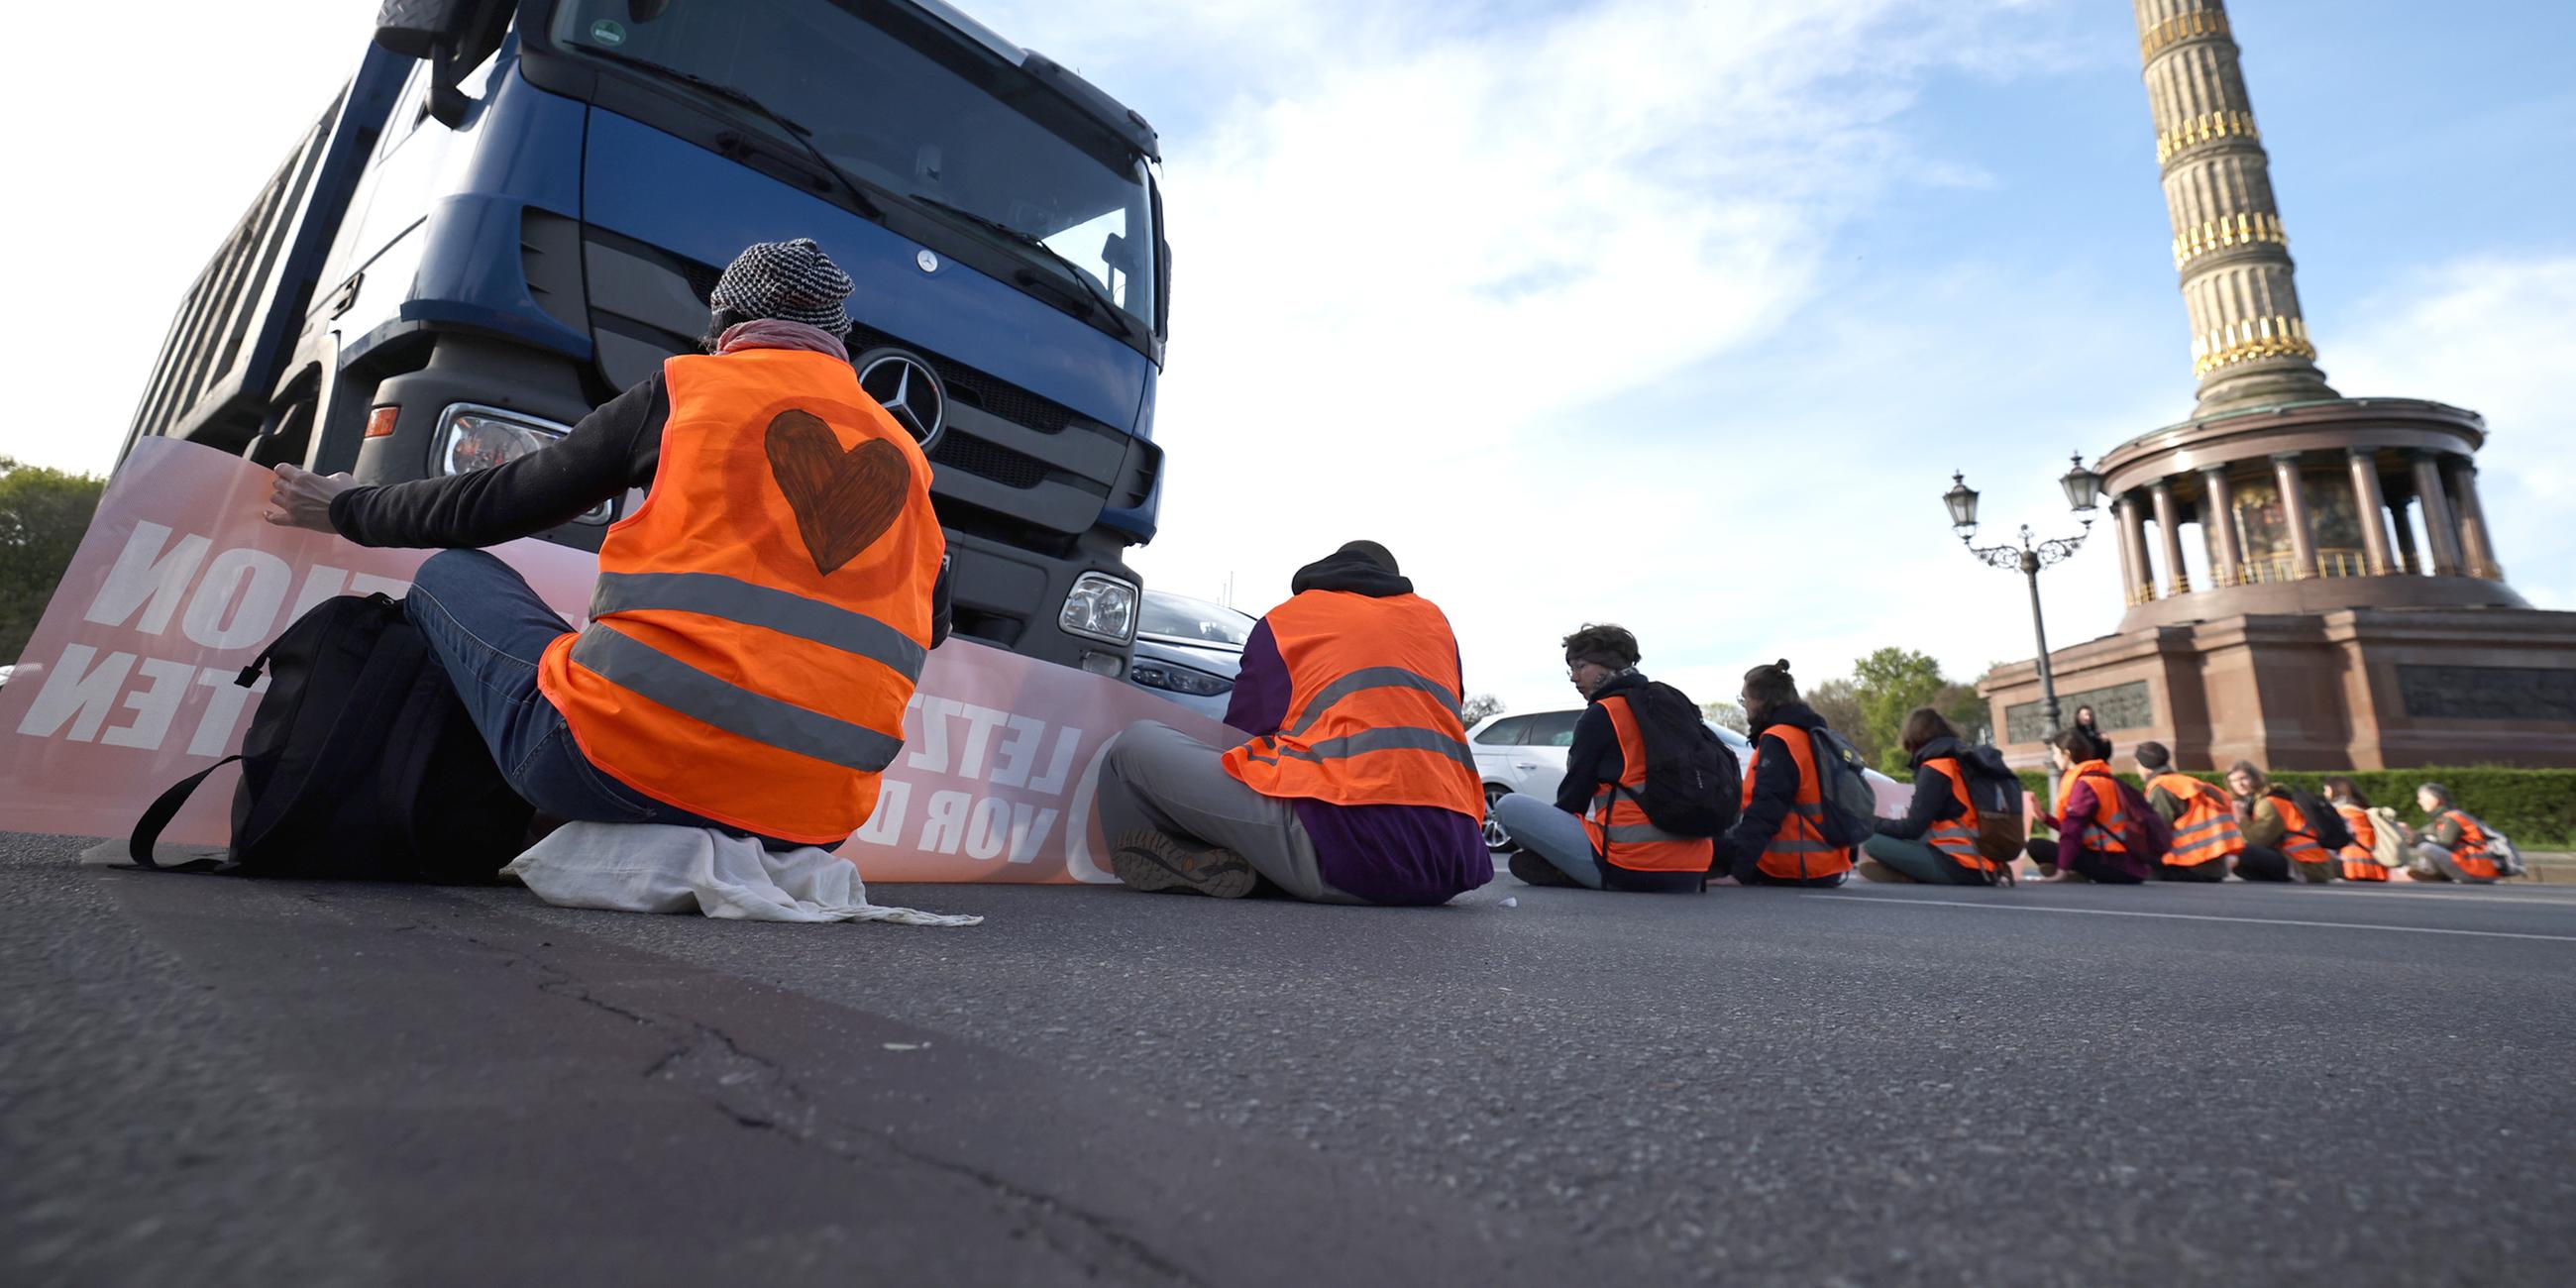 Aktivisten blockieren eine Straße während eines Klimaprotestes an der Siegessäule in Berlin